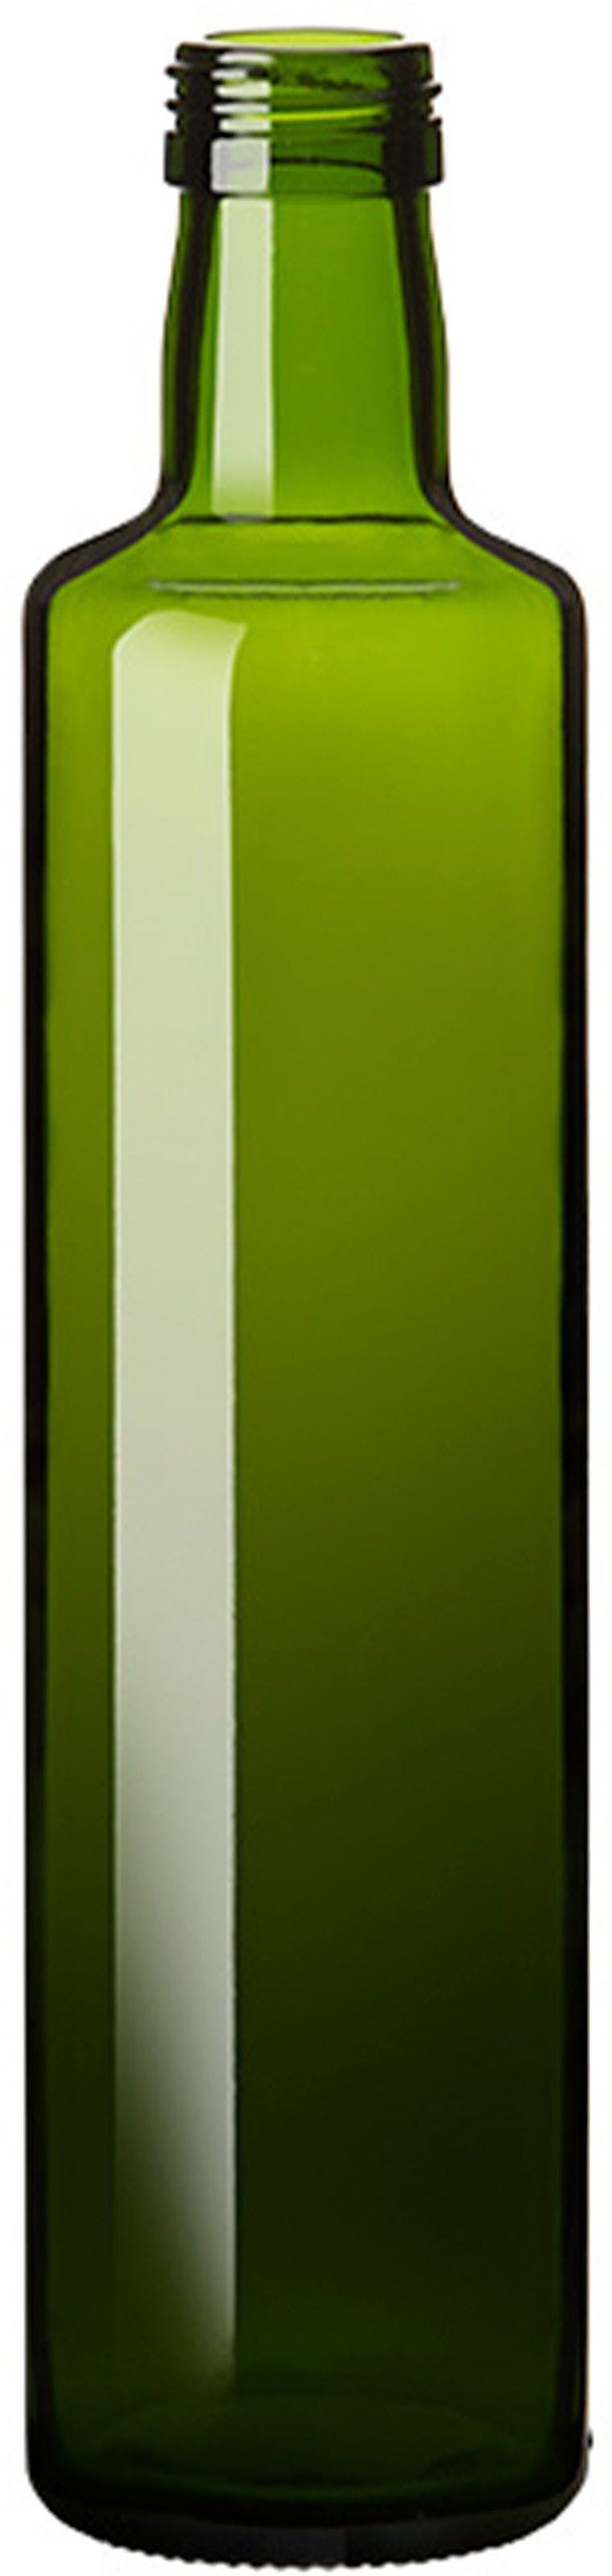 Bottle DORICA 500 P 31,5 X 18 VV